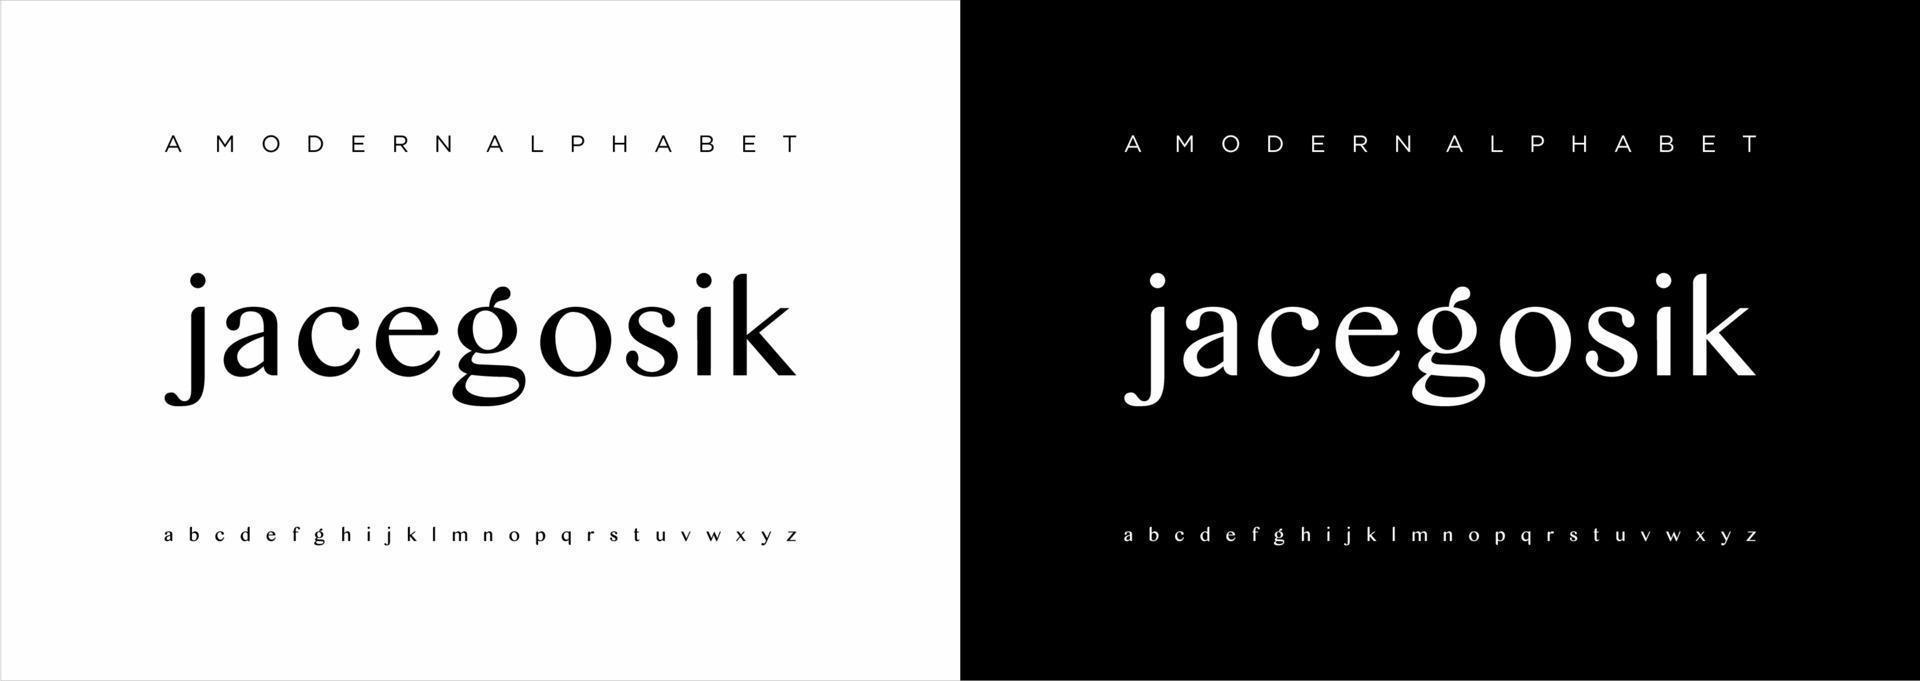 elegante fuente de letras del alfabeto moderno. Diseños de moda minimalista con letras clásicas. tipografía moderna serif fuentes regulares vector